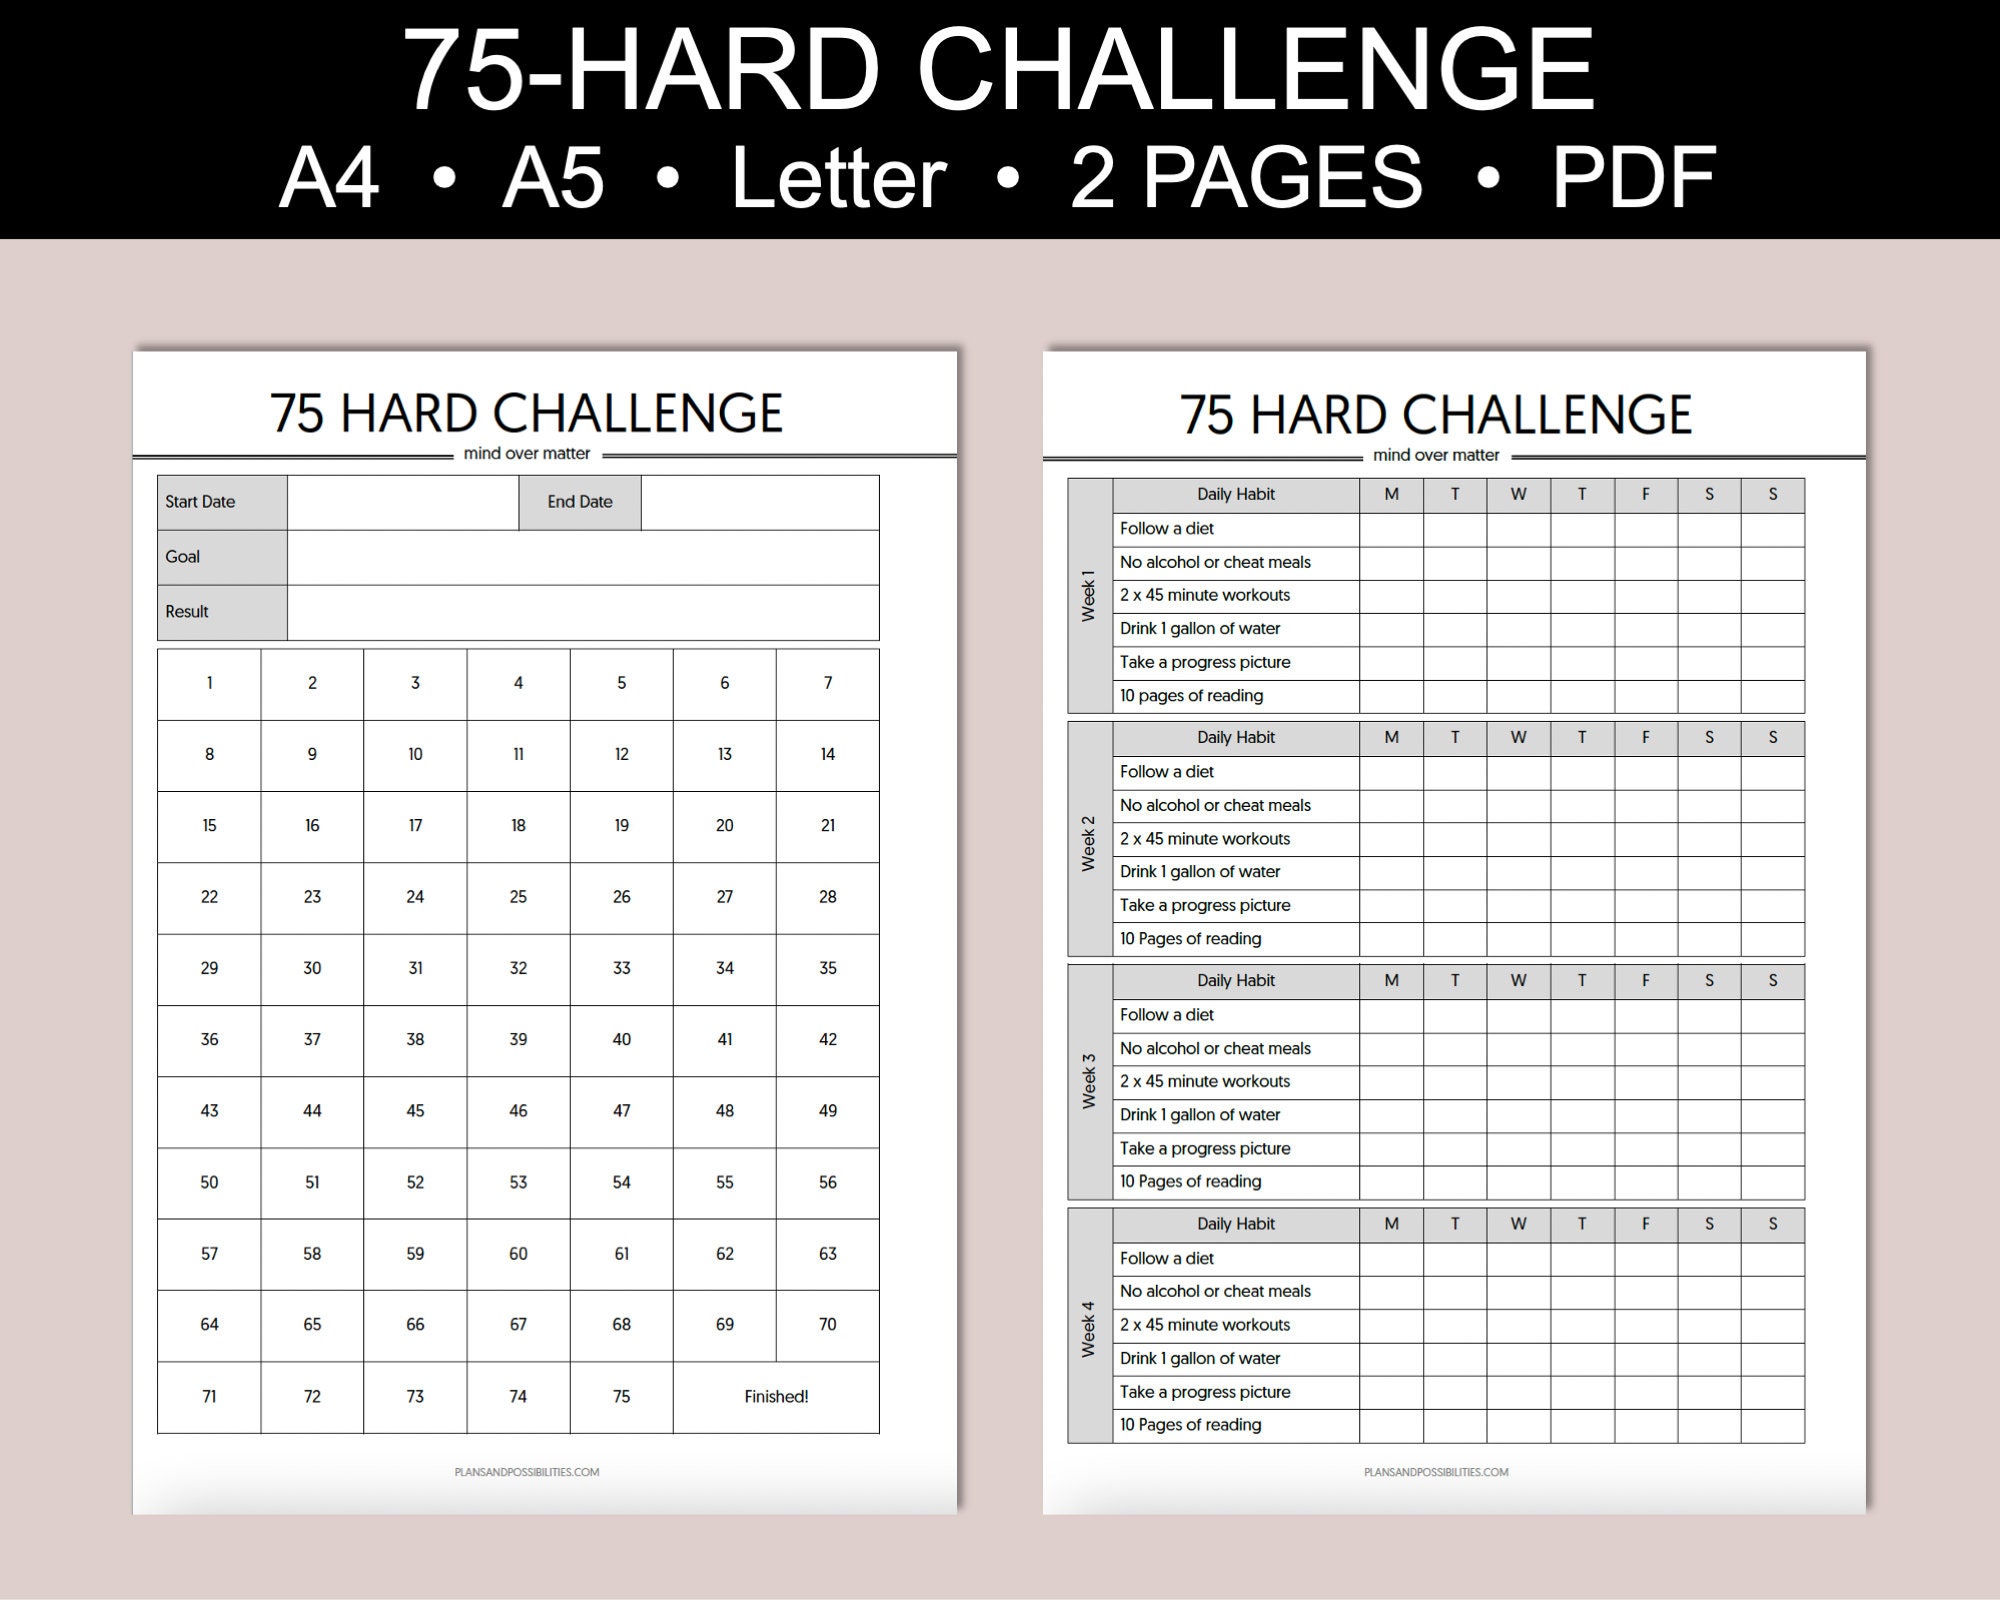 75-hard-challenge-checklist-daily-habit-tracker-digital-schedule